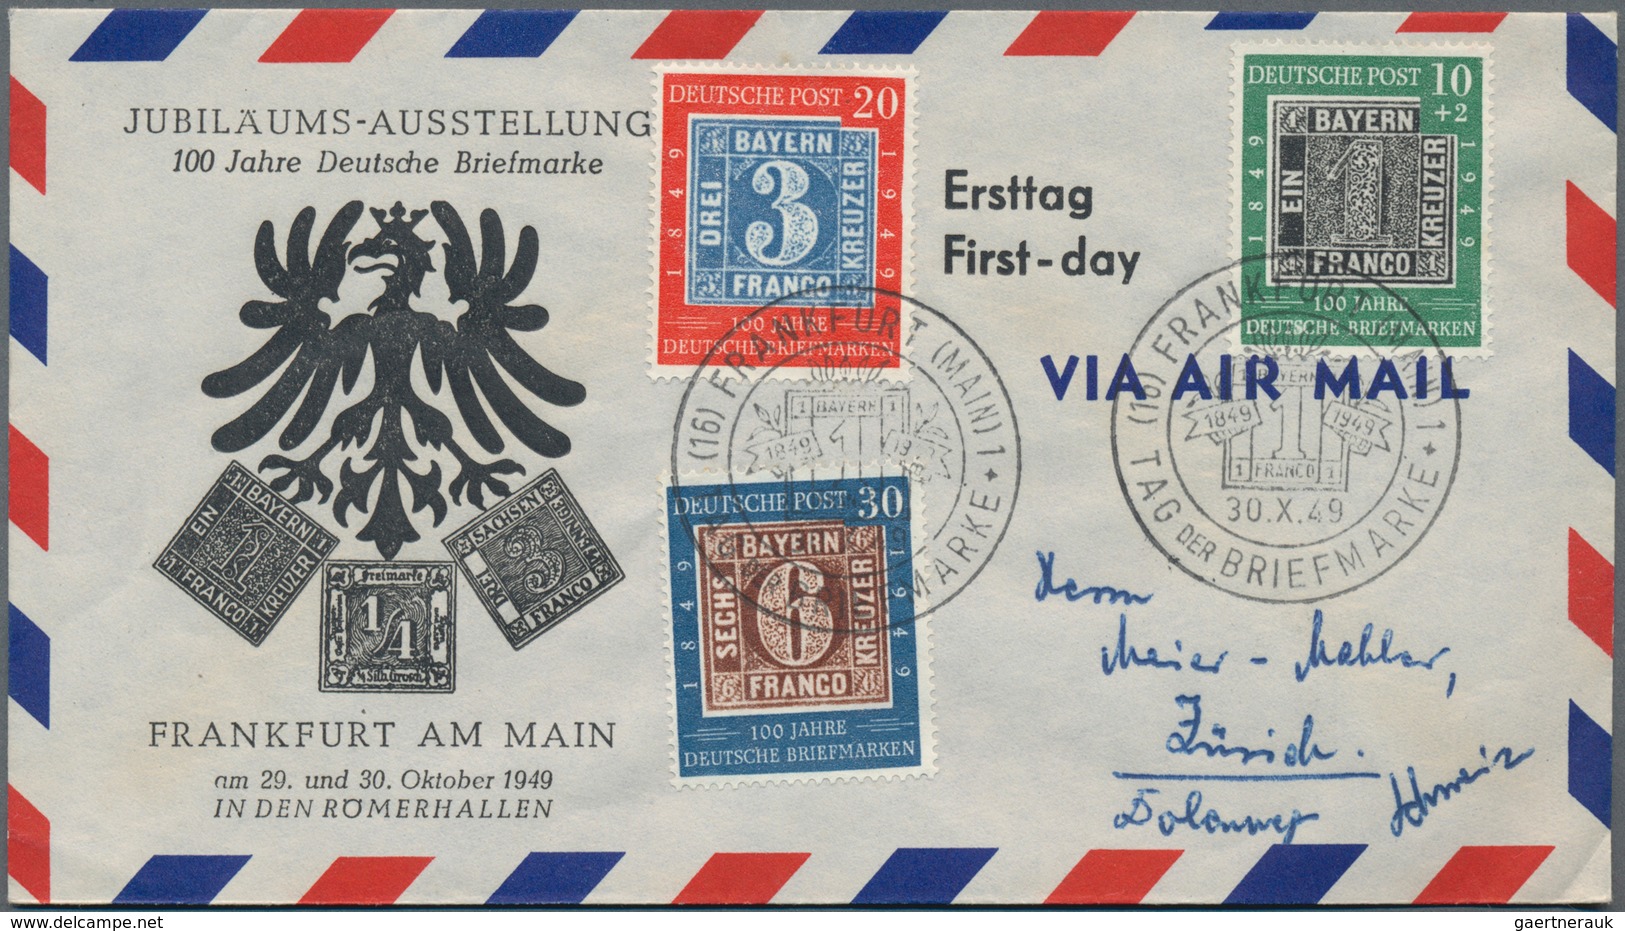 Deutschland nach 1945: 1946/1995, vielseitiger Posten von ca. 730 Briefen und Karten mit Hauptwert b